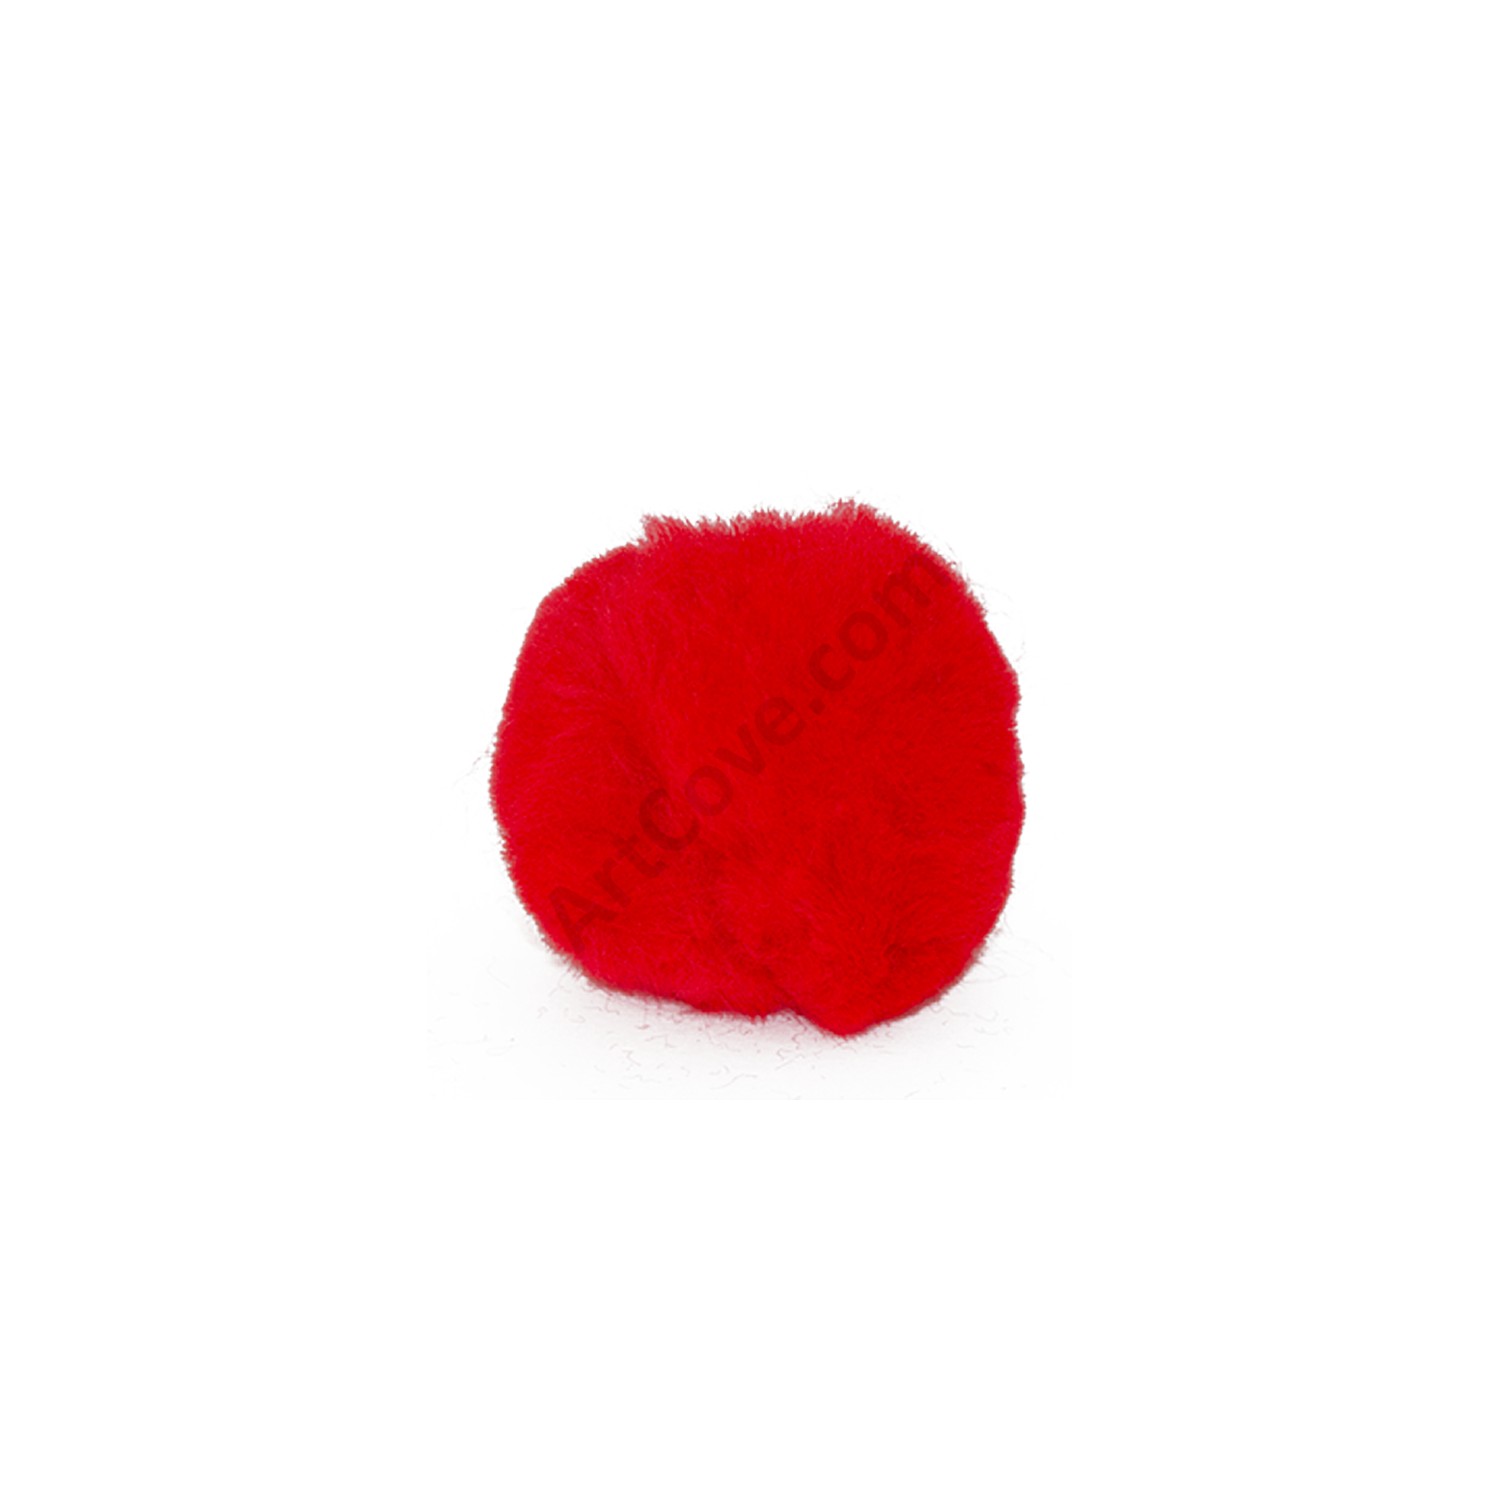 Pom Pom (single pom) in red or royal